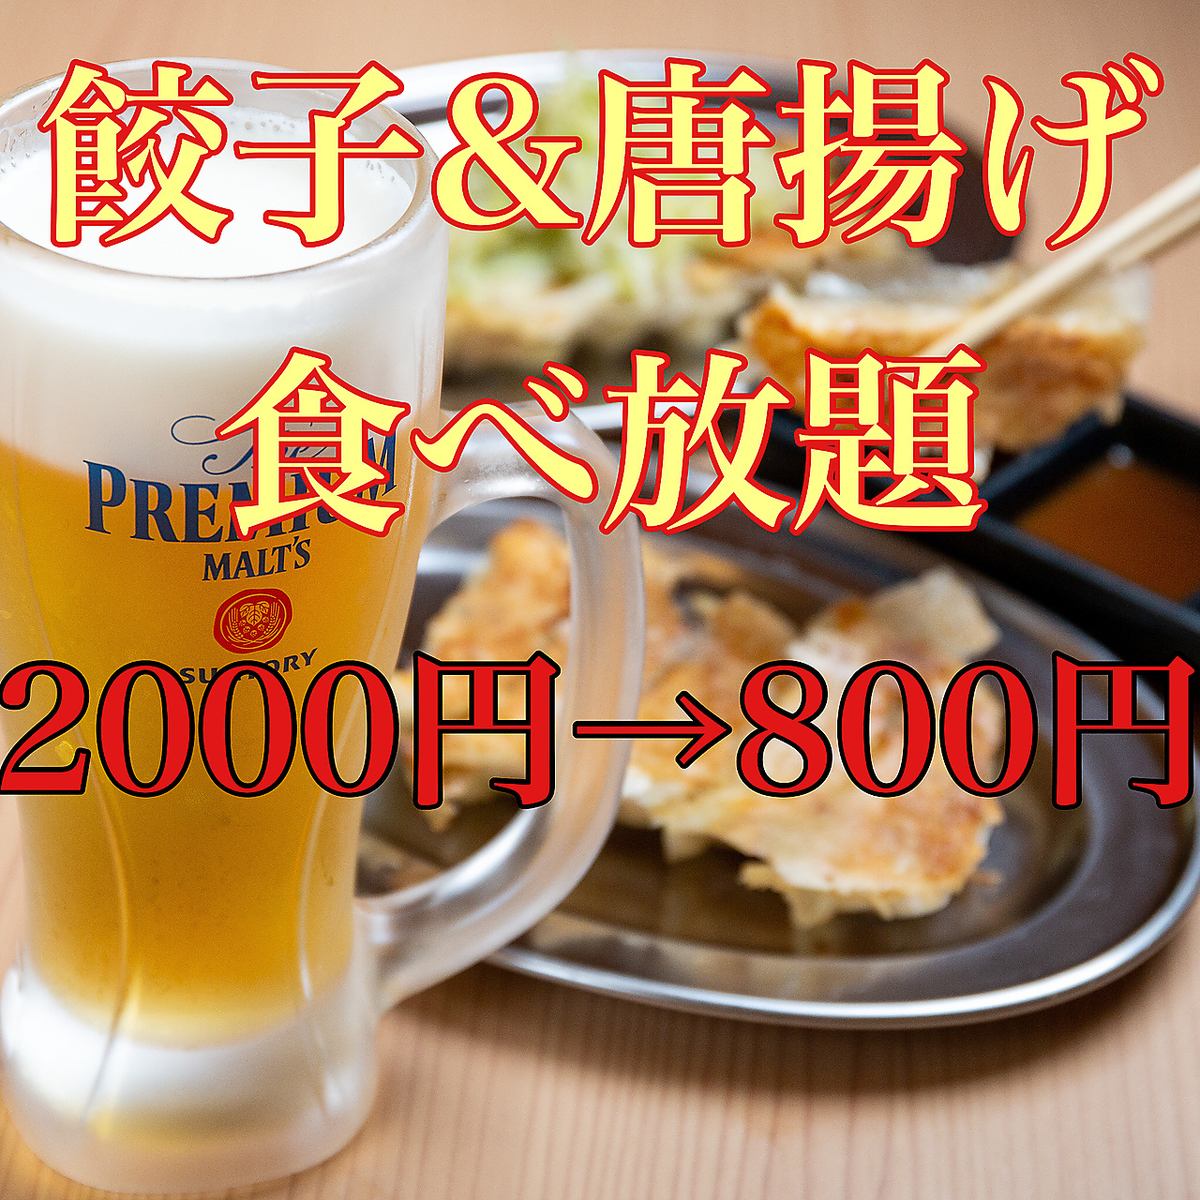 仅限预约●饺子4种×炸鸡4种吃到饱2000日元→800日元●